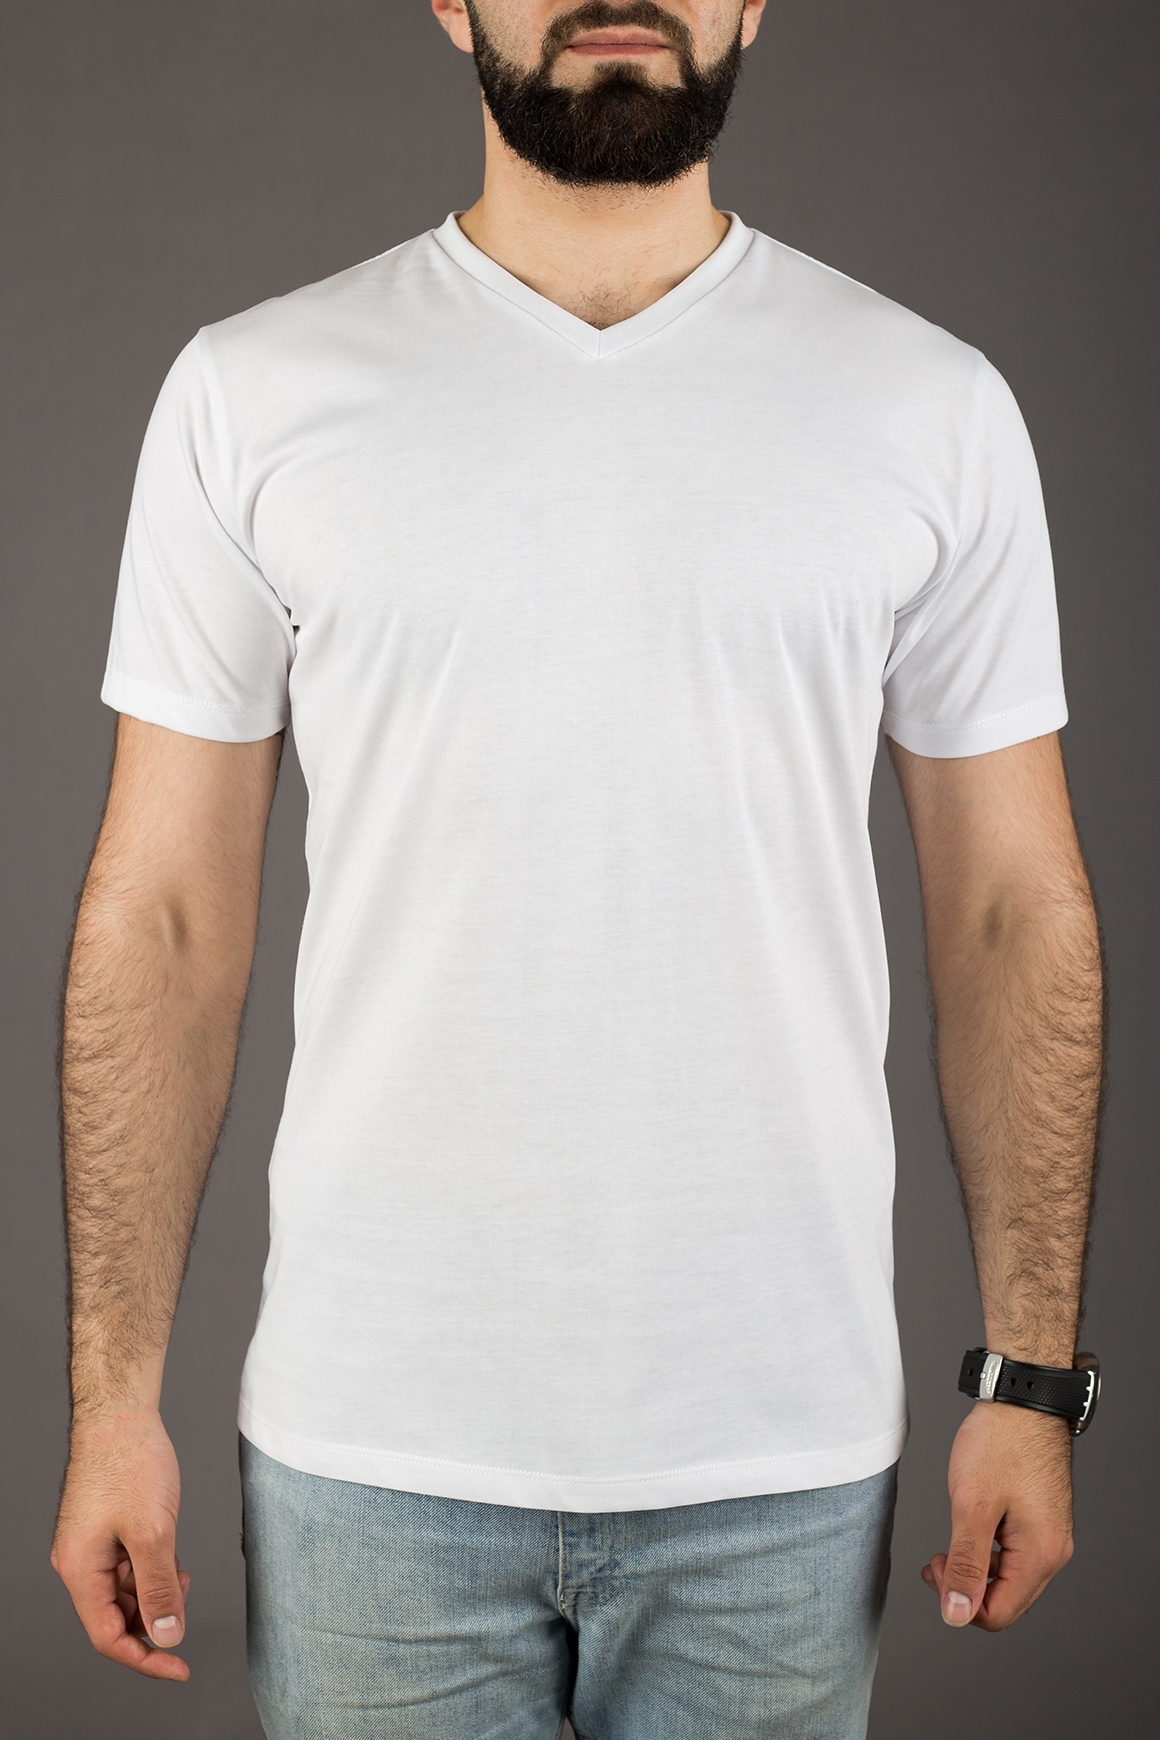 John & Paul - Pořádné tričko John & Paul - bílé (V-neck) - John & Paul -  Trička - Oblečení - Padnoucí košile pro štíhlé muže